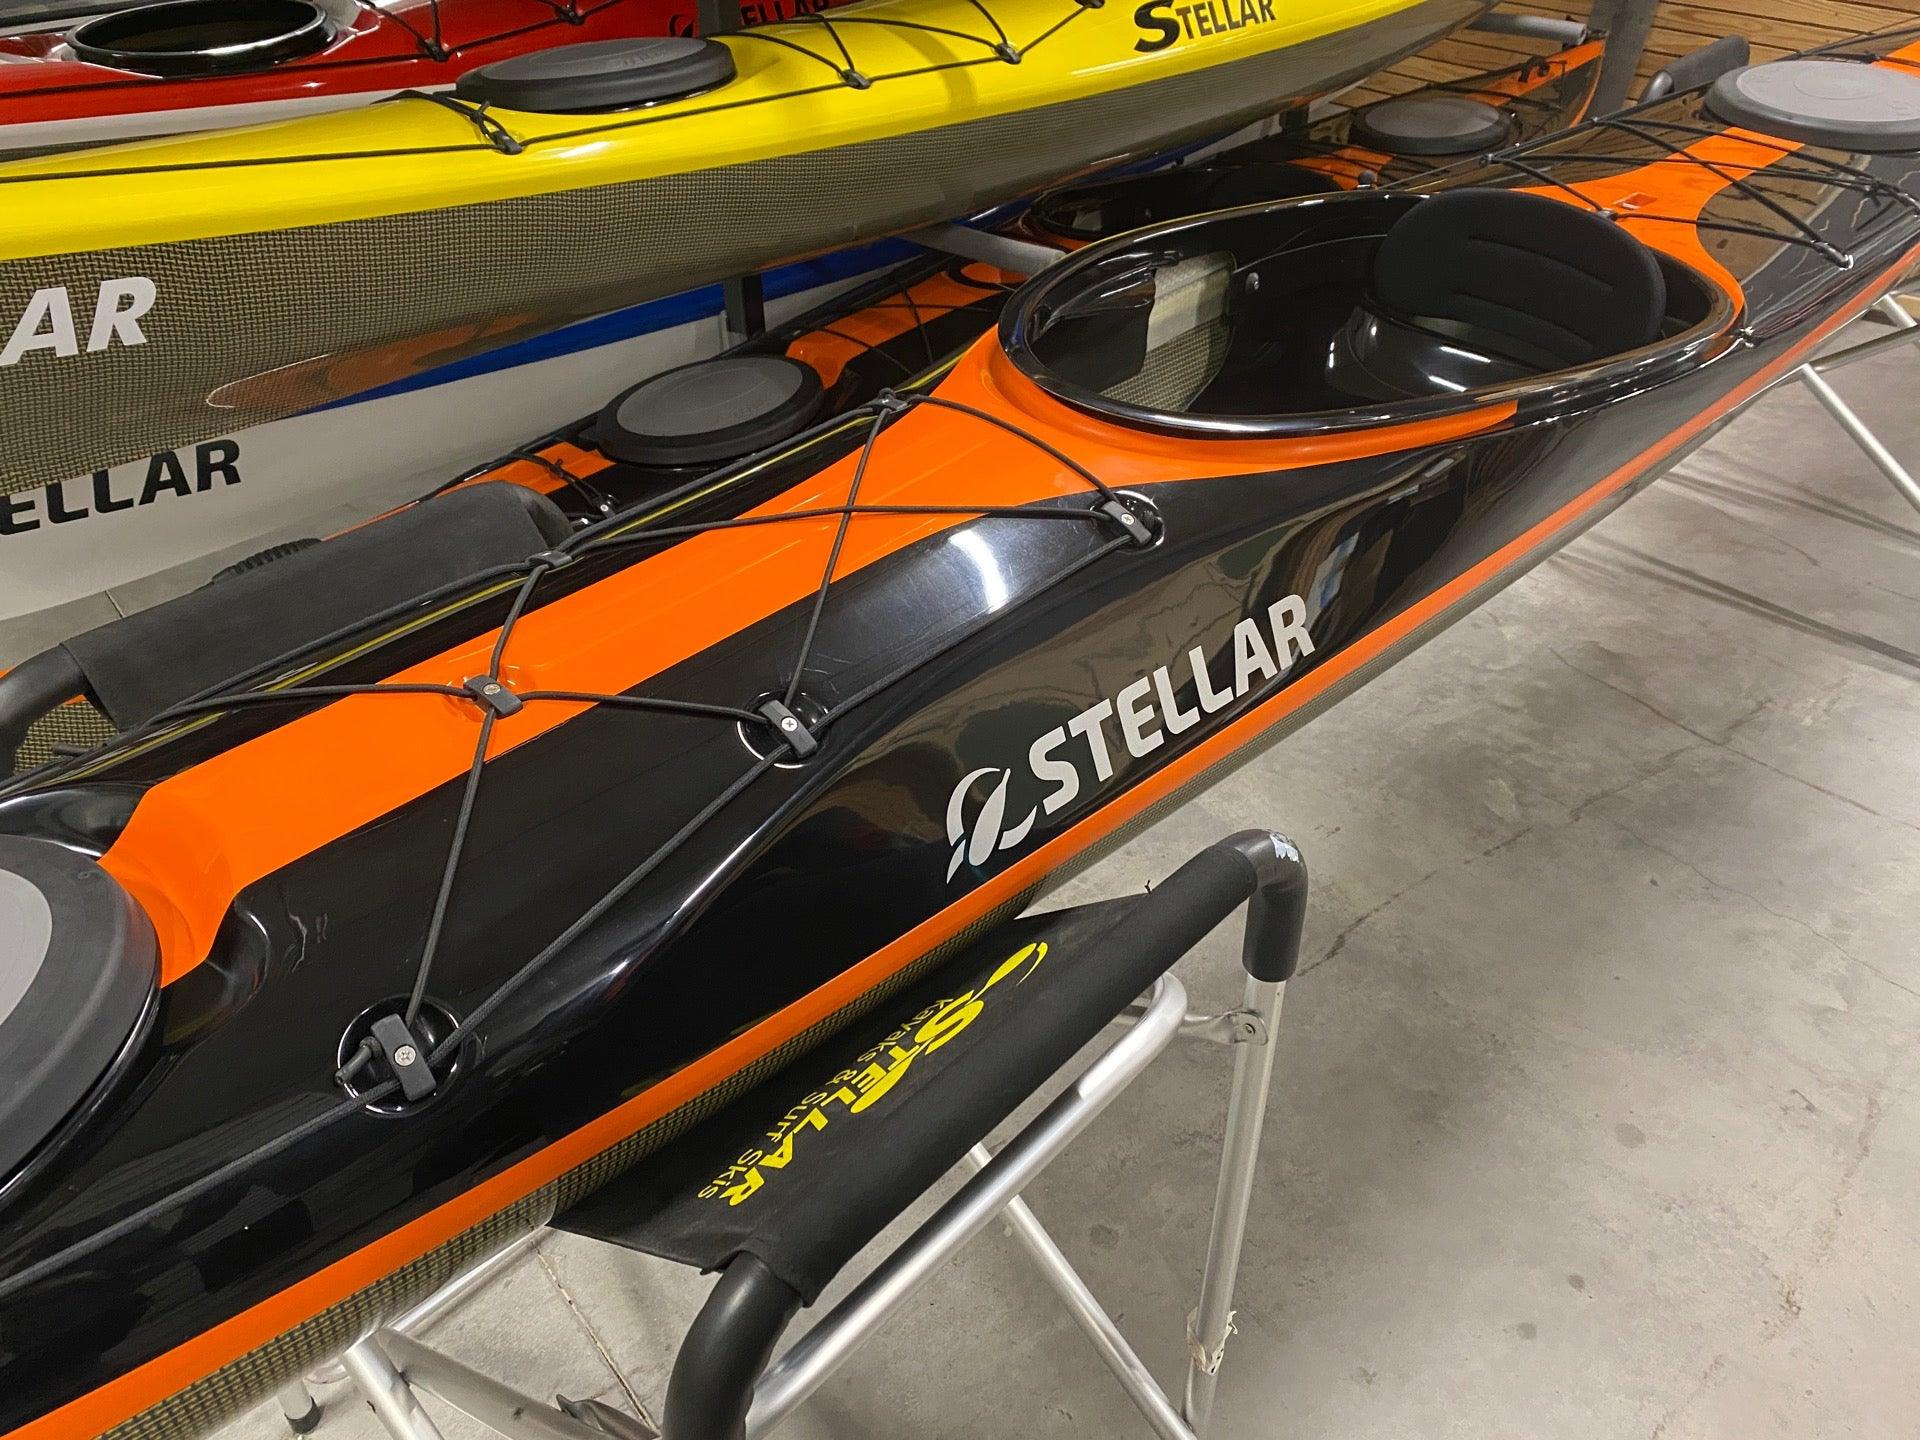 Produktbild von Kajak " S18 R Multisport-schwarz orange " der Marke STELLAR Lightweight für 3390.00 €. Erhältlich online bei Lite Venture ( www.liteventure.de )